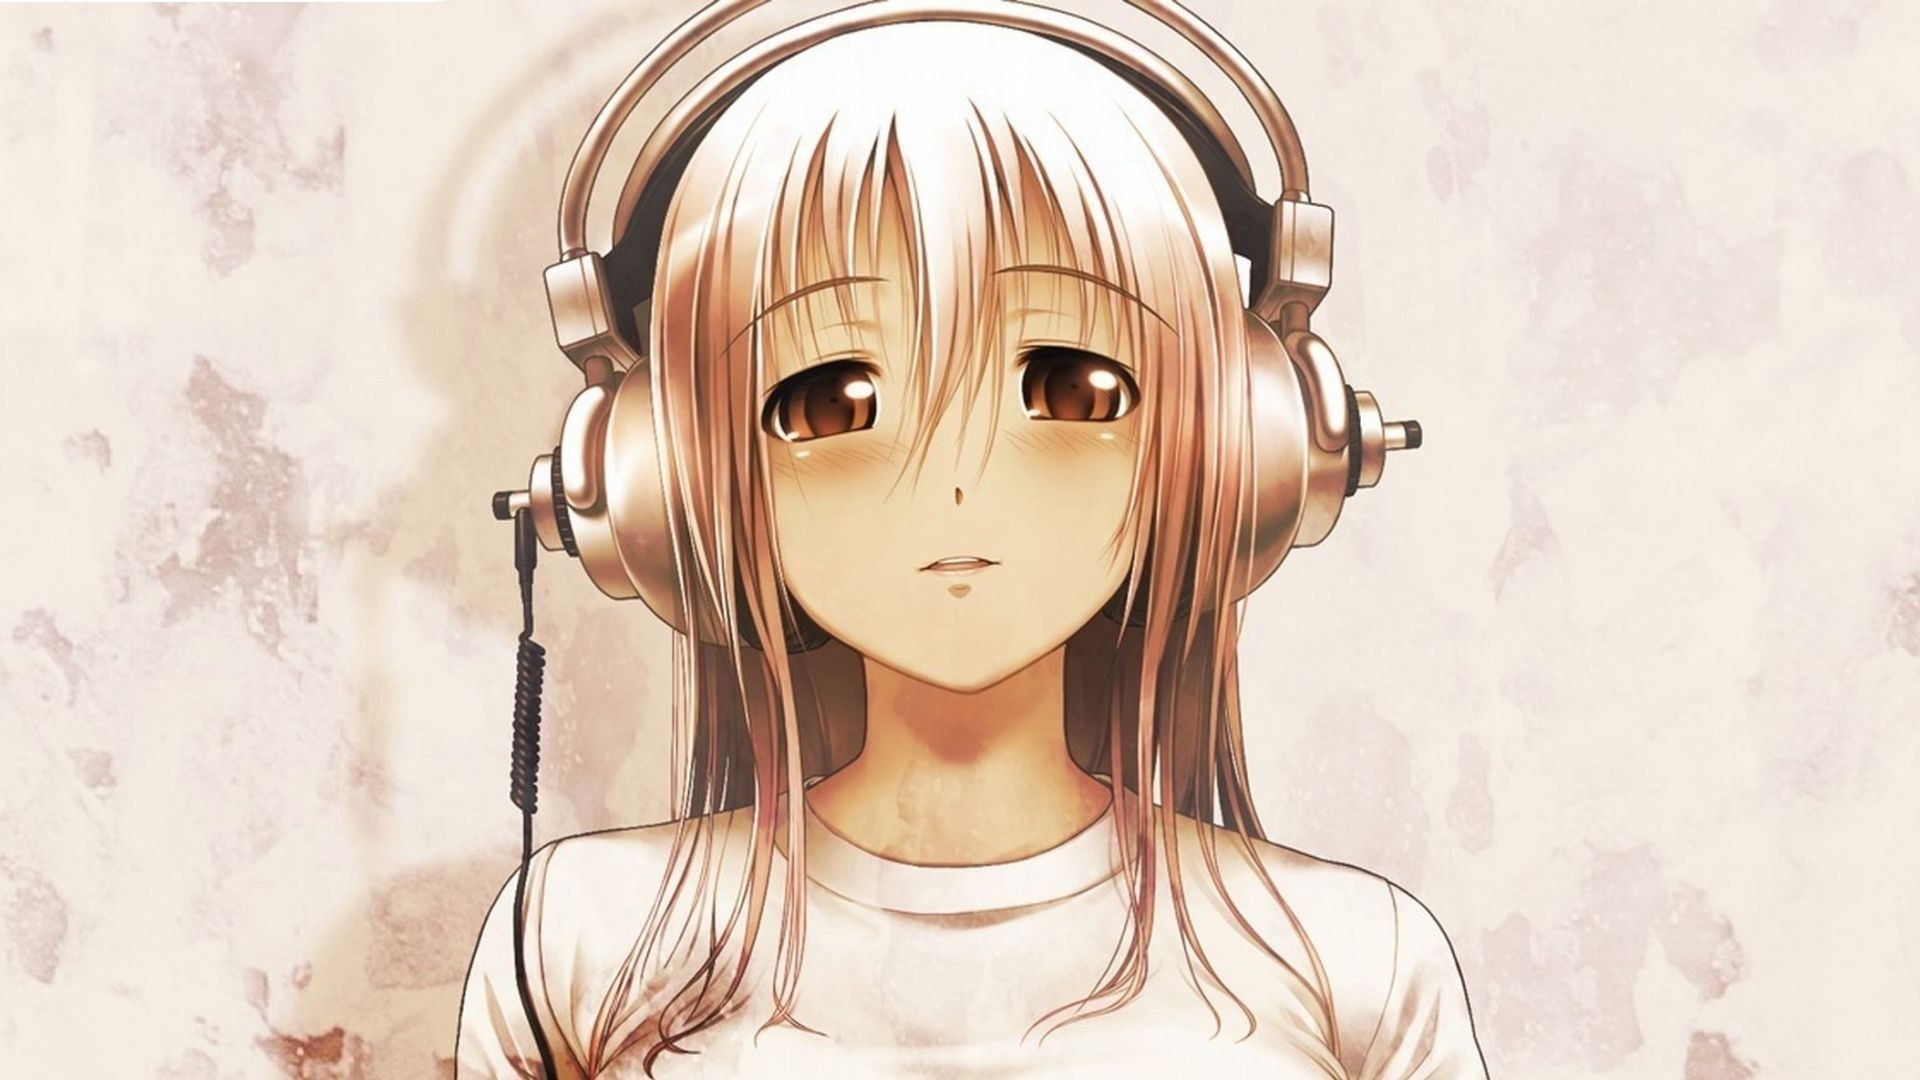 Hình nền cute anime music làm quà tặng tuyệt vời cho tất cả những ai yêu thích anime và âm nhạc. Hãy xem ngay những hình ảnh liên quan đến từ khóa này để có một màn hình điện thoại hay máy tính bảng trở nên năng động và đáng yêu hơn.